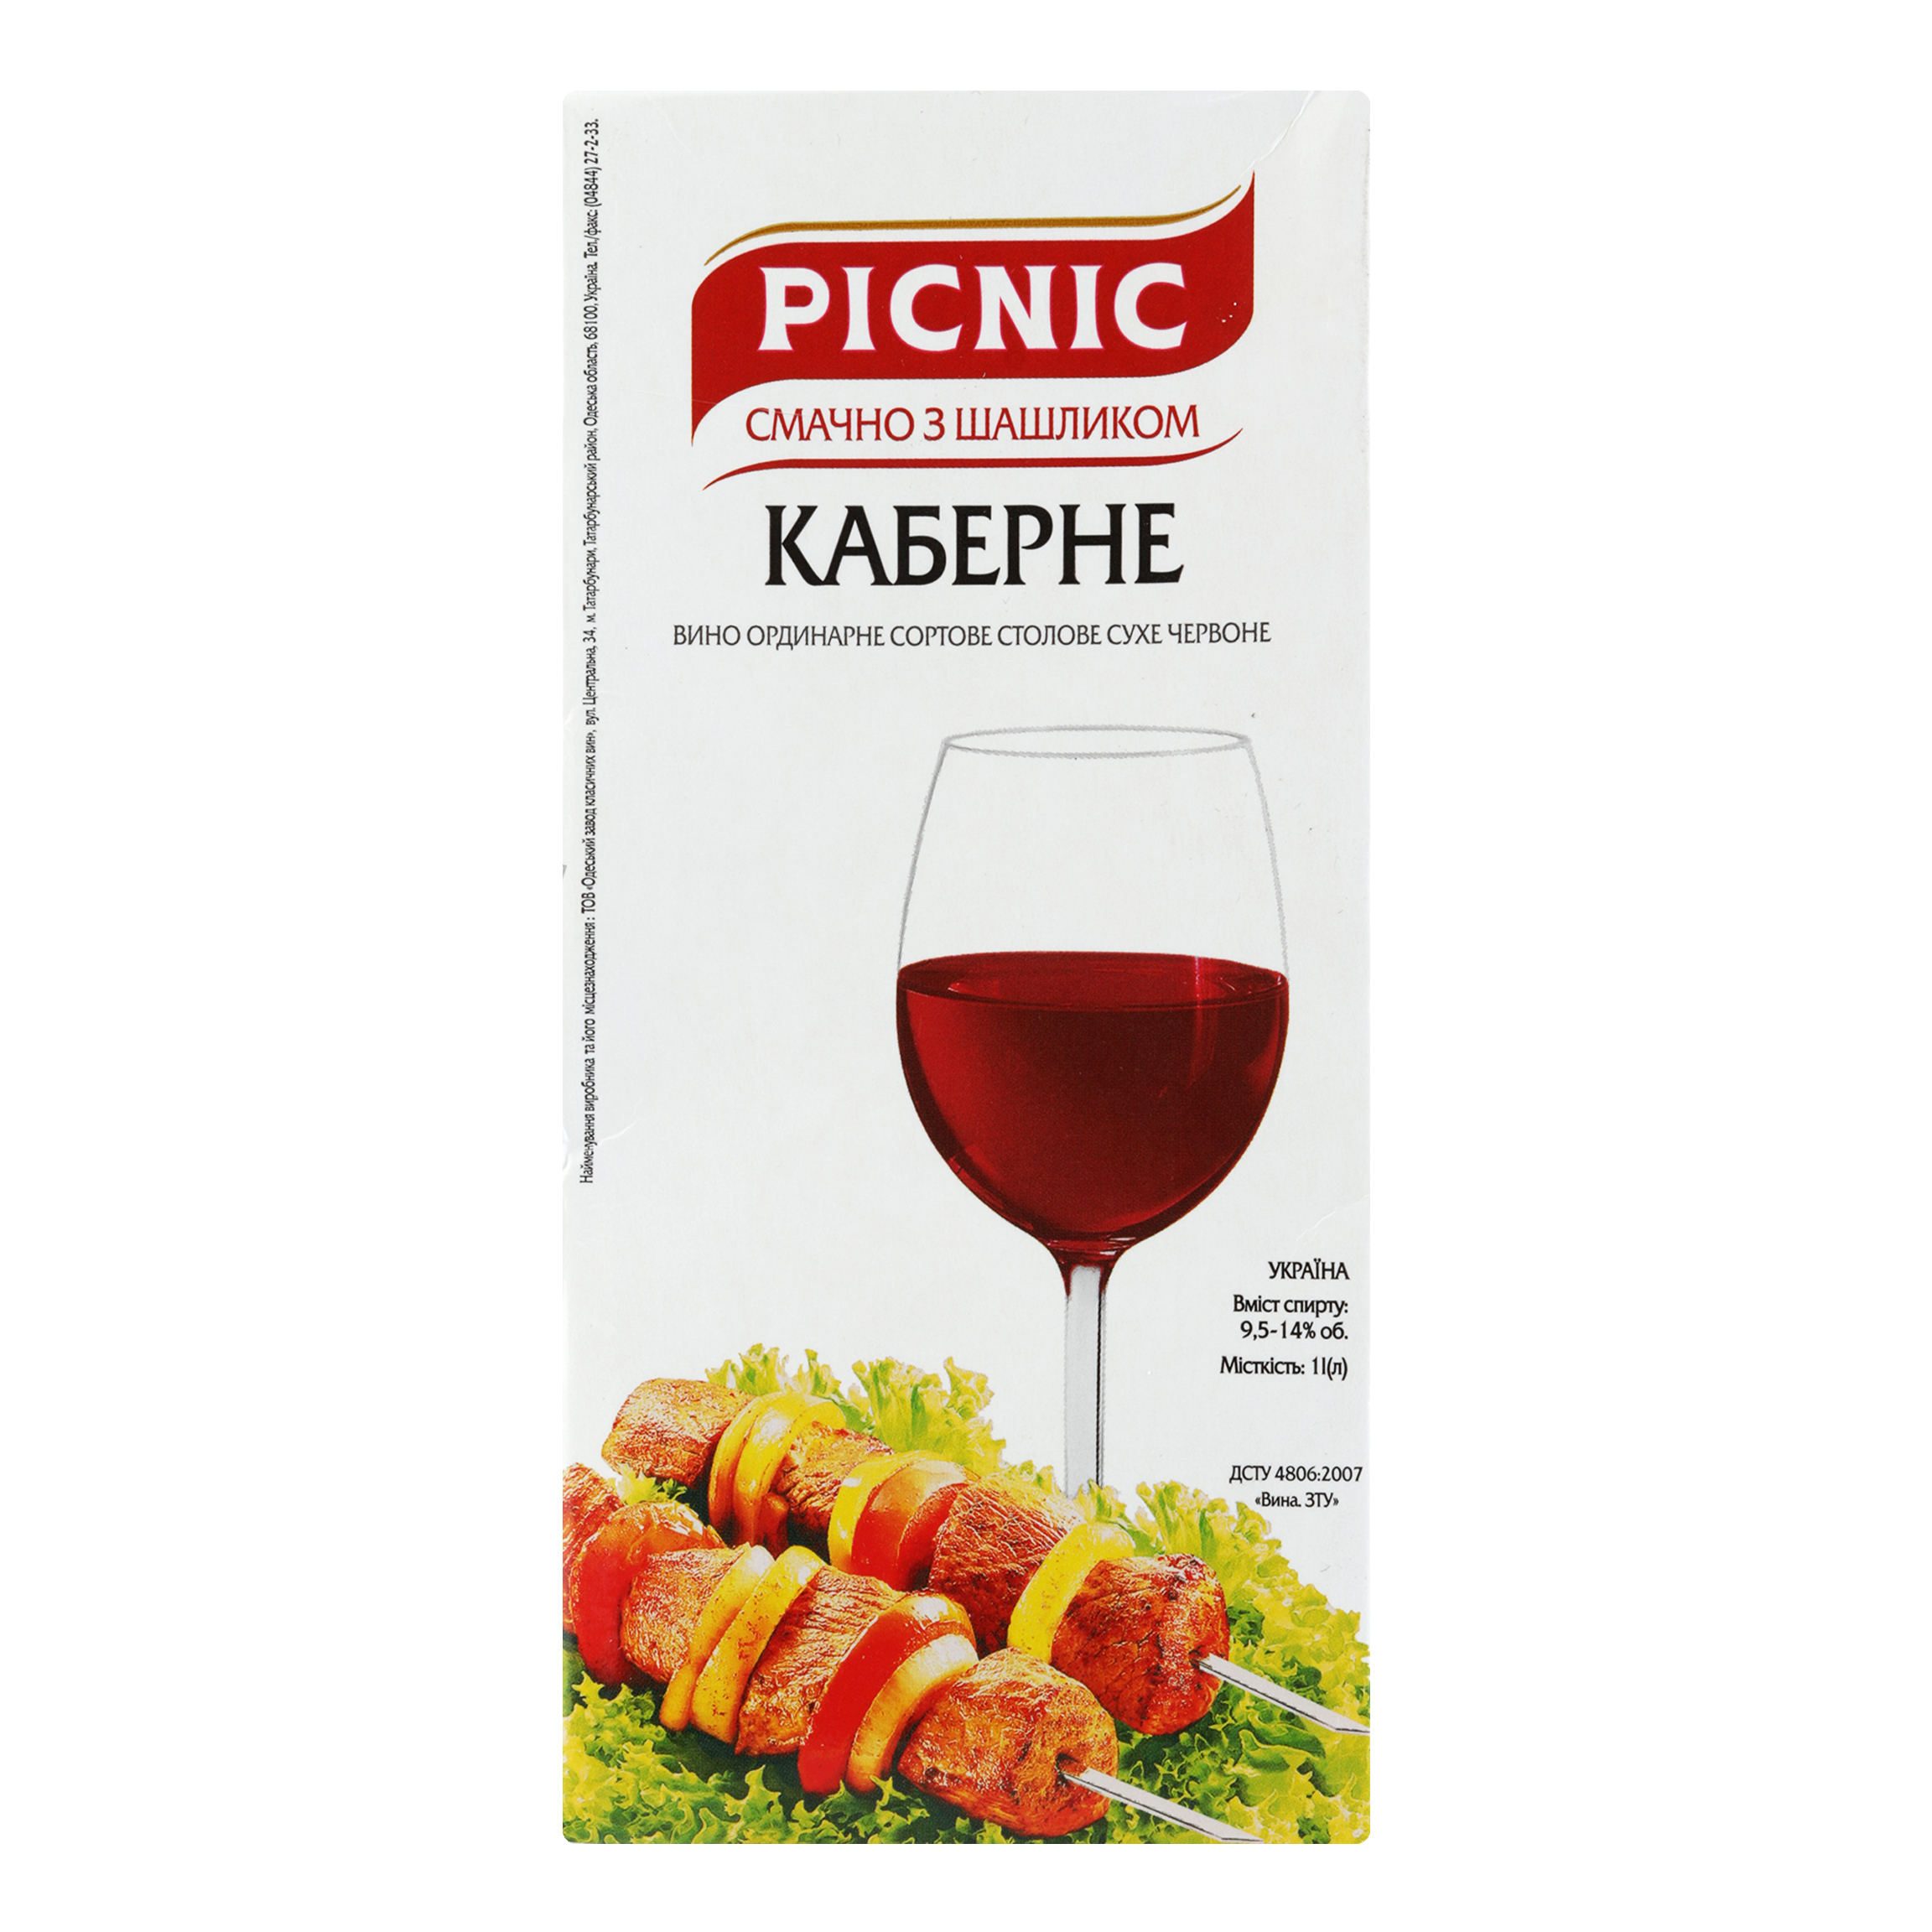 Вино Picnic Каберное сухое красное 13% 1л